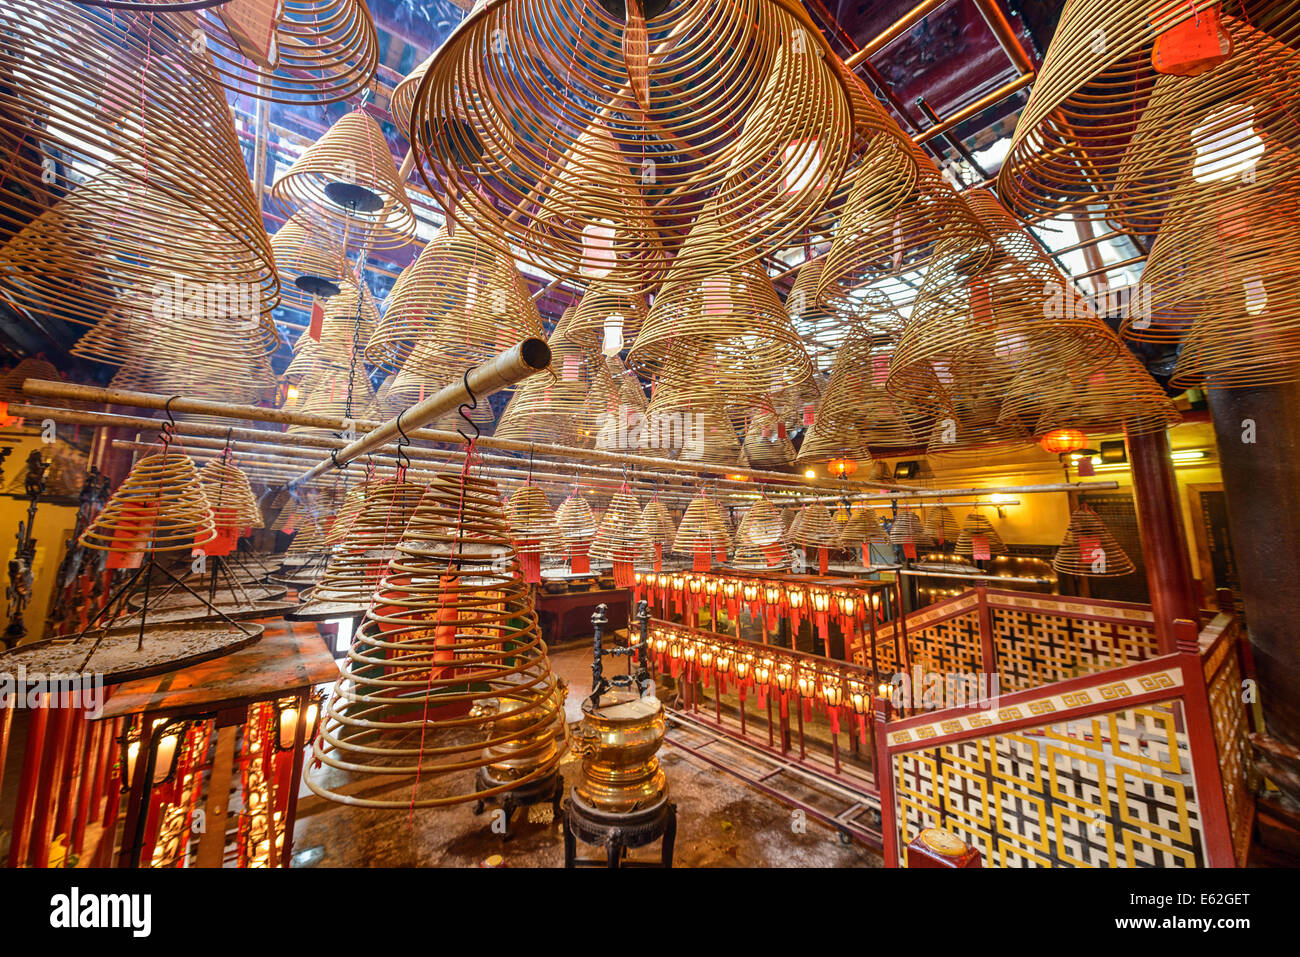 Man Mo Temple in Hong Kong, China. Stock Photo